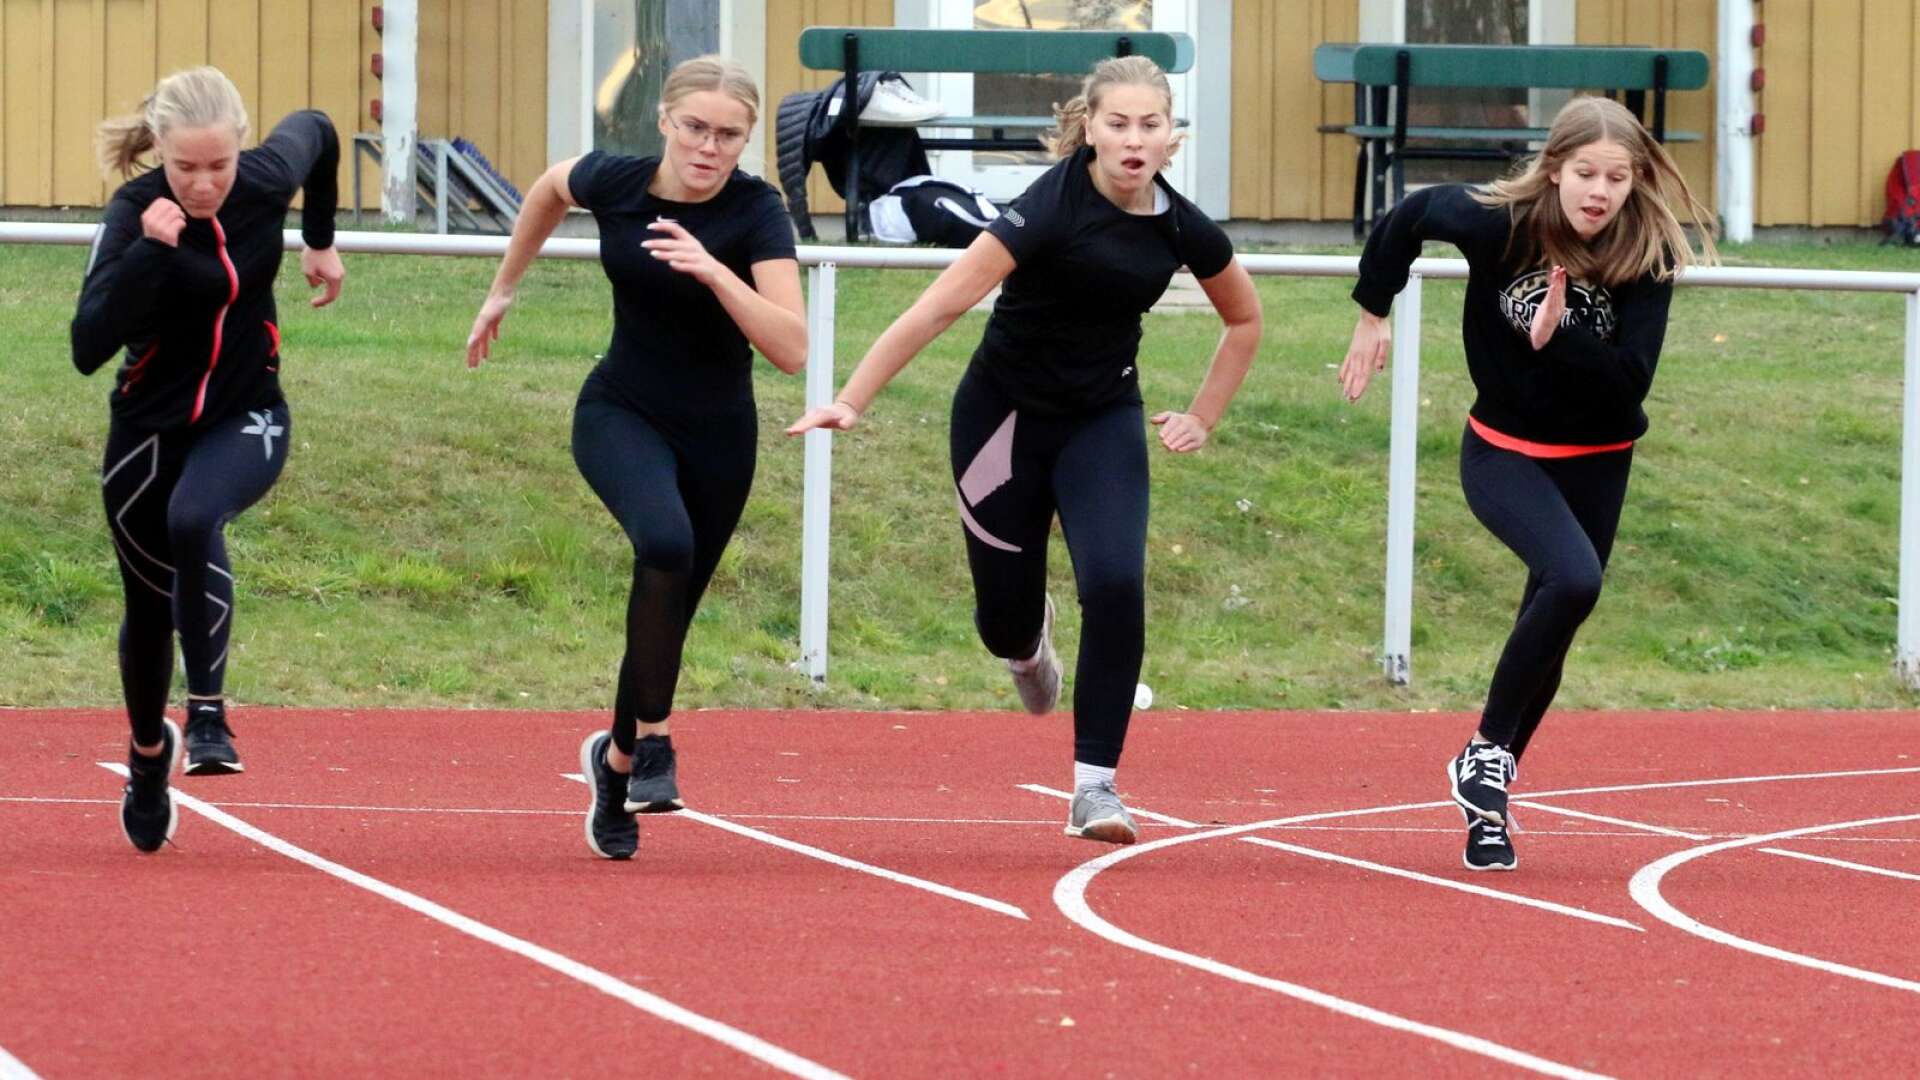 Koncentrationen var på topp i hundrametersloppet för flickor i årskurs 8. Från vänster: Linnea Hallgren, Filippa Viotto, Rebecka Madestam och Rebecka Thorsén. 